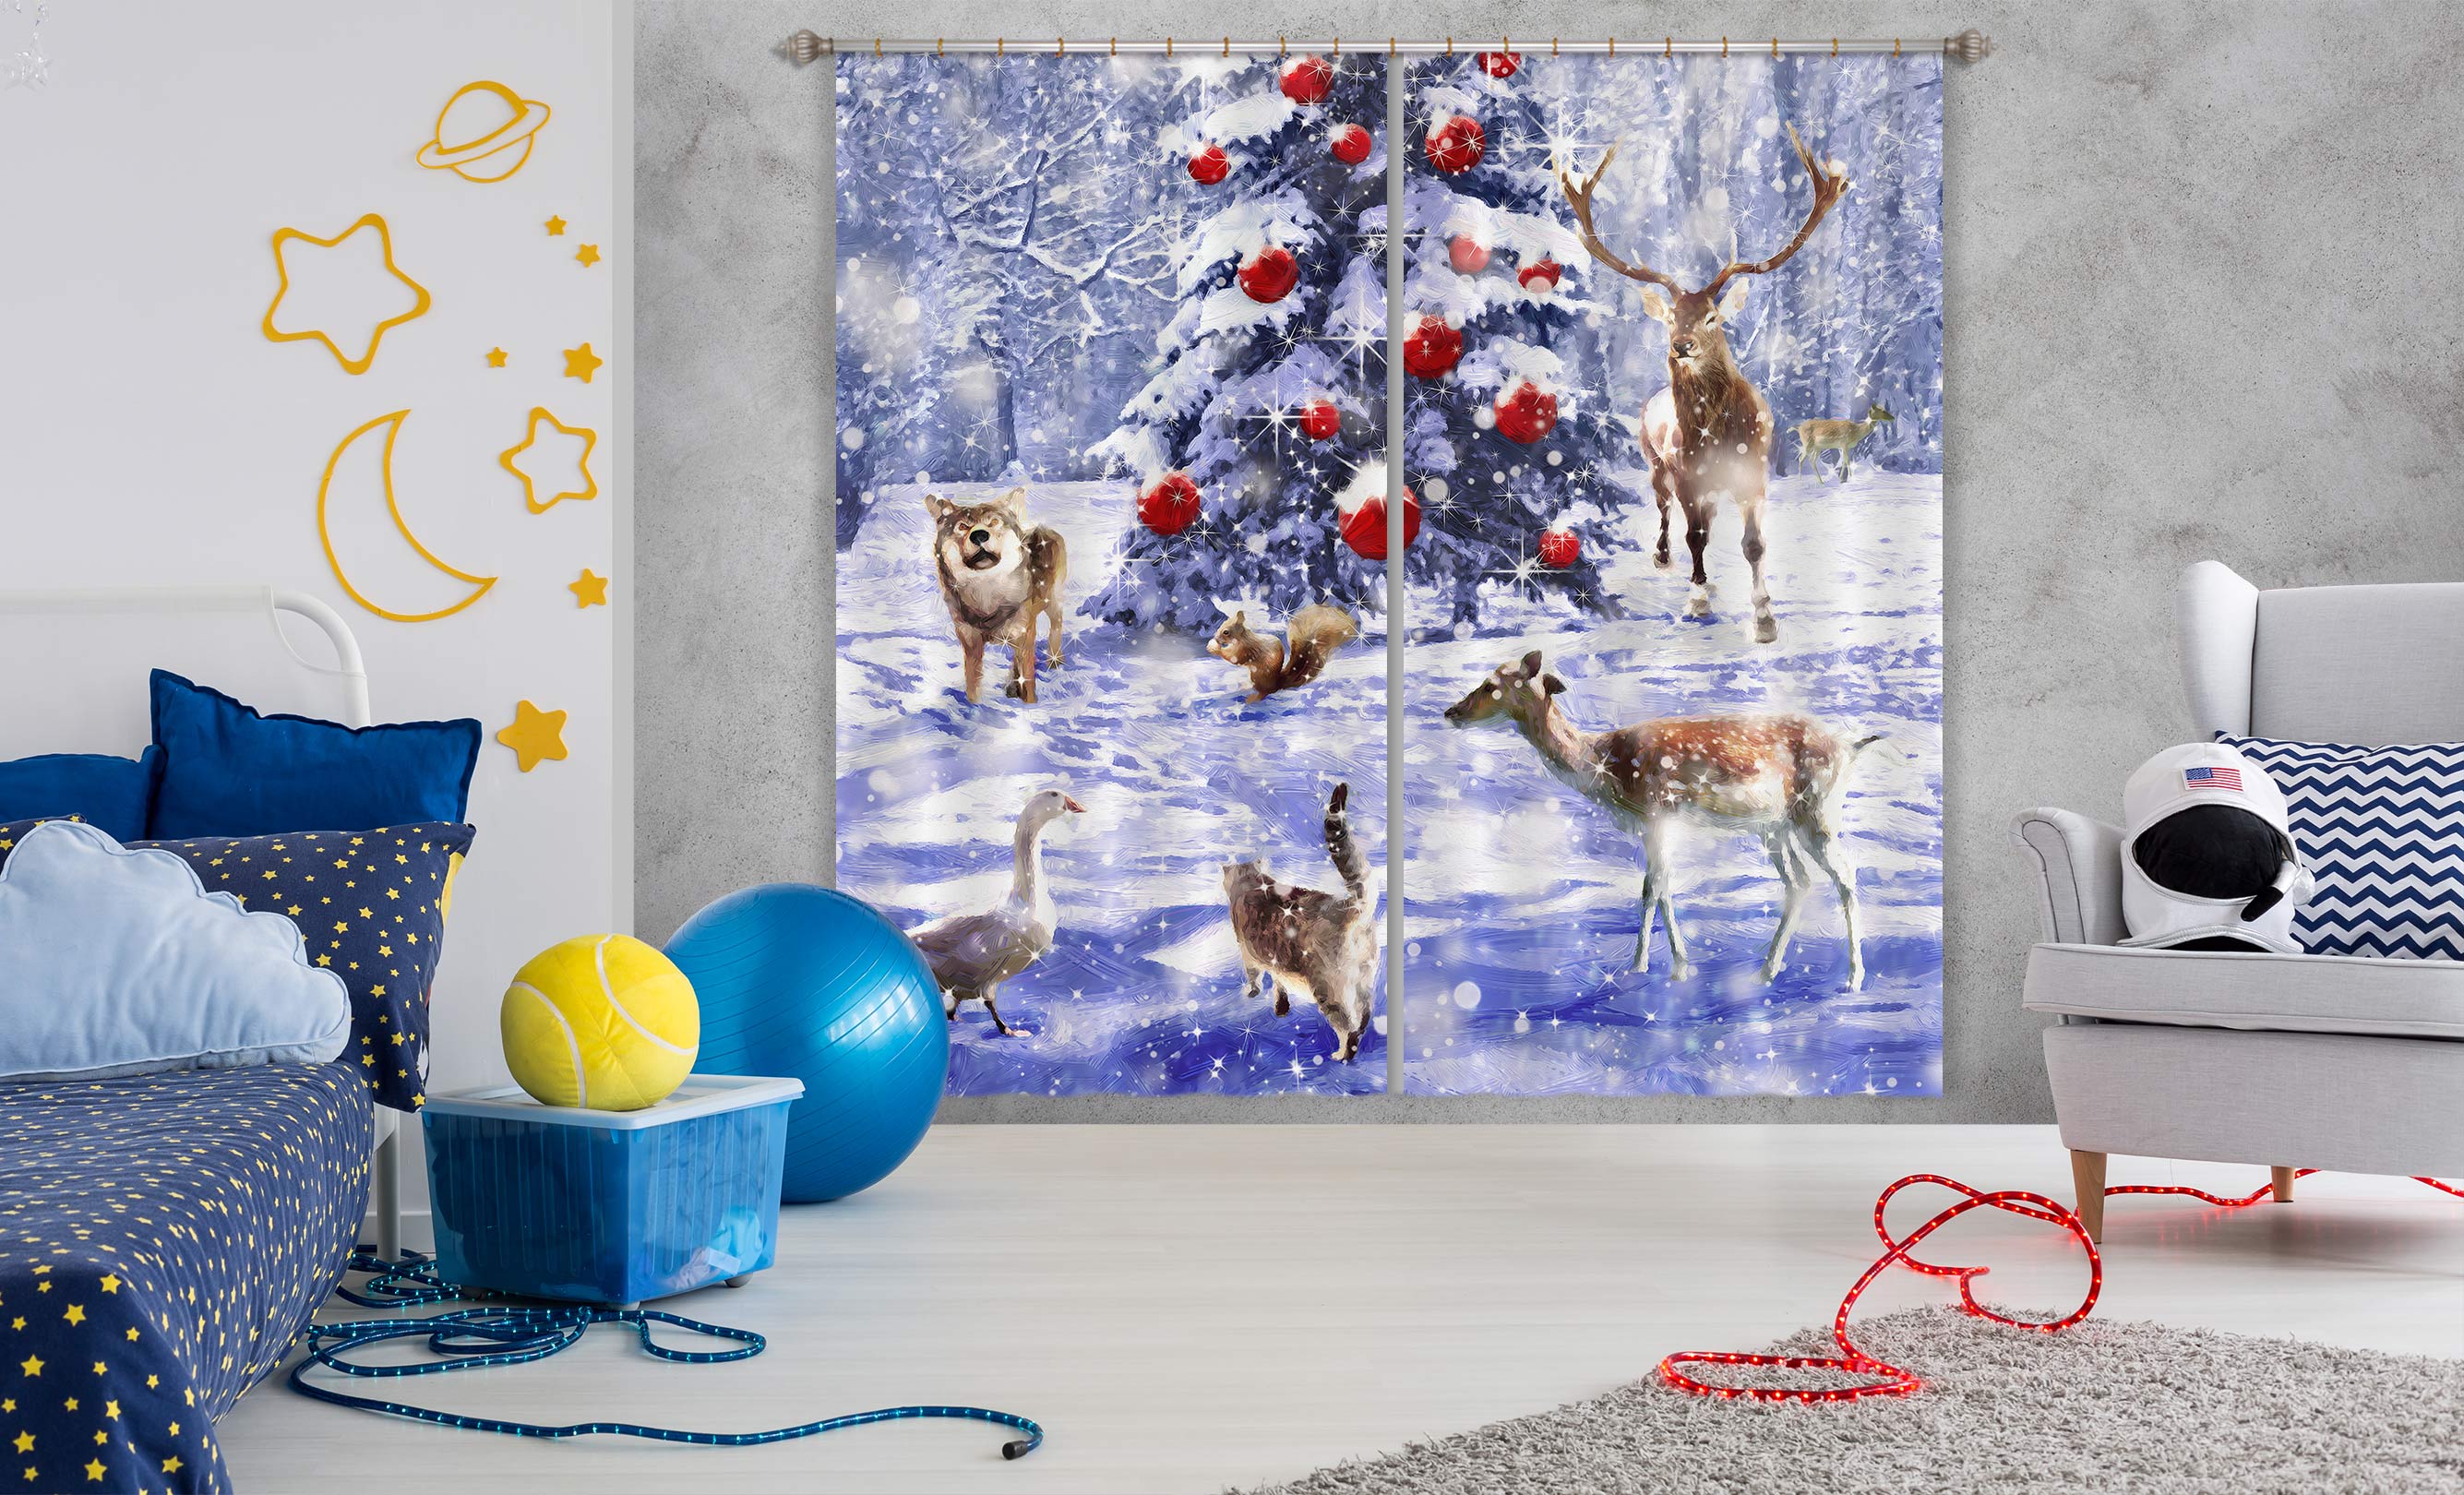 3D Snow Tree Deer 52027 Christmas Curtains Drapes Xmas